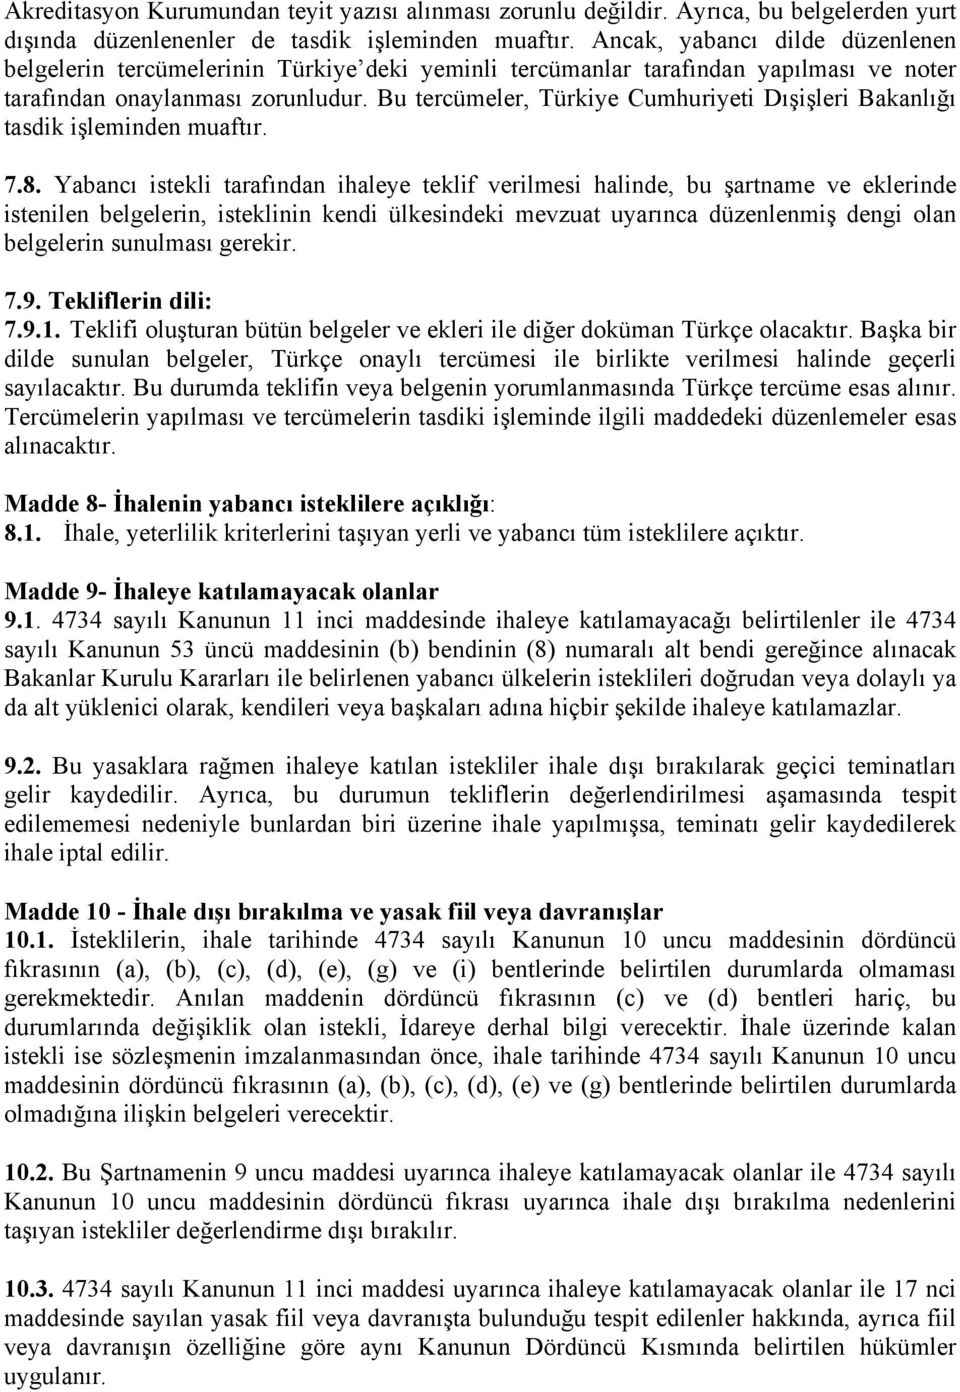 Bu tercümeler, Türkiye Cumhuriyeti Dışişleri Bakanlığı tasdik işleminden muaftır. 7.8.